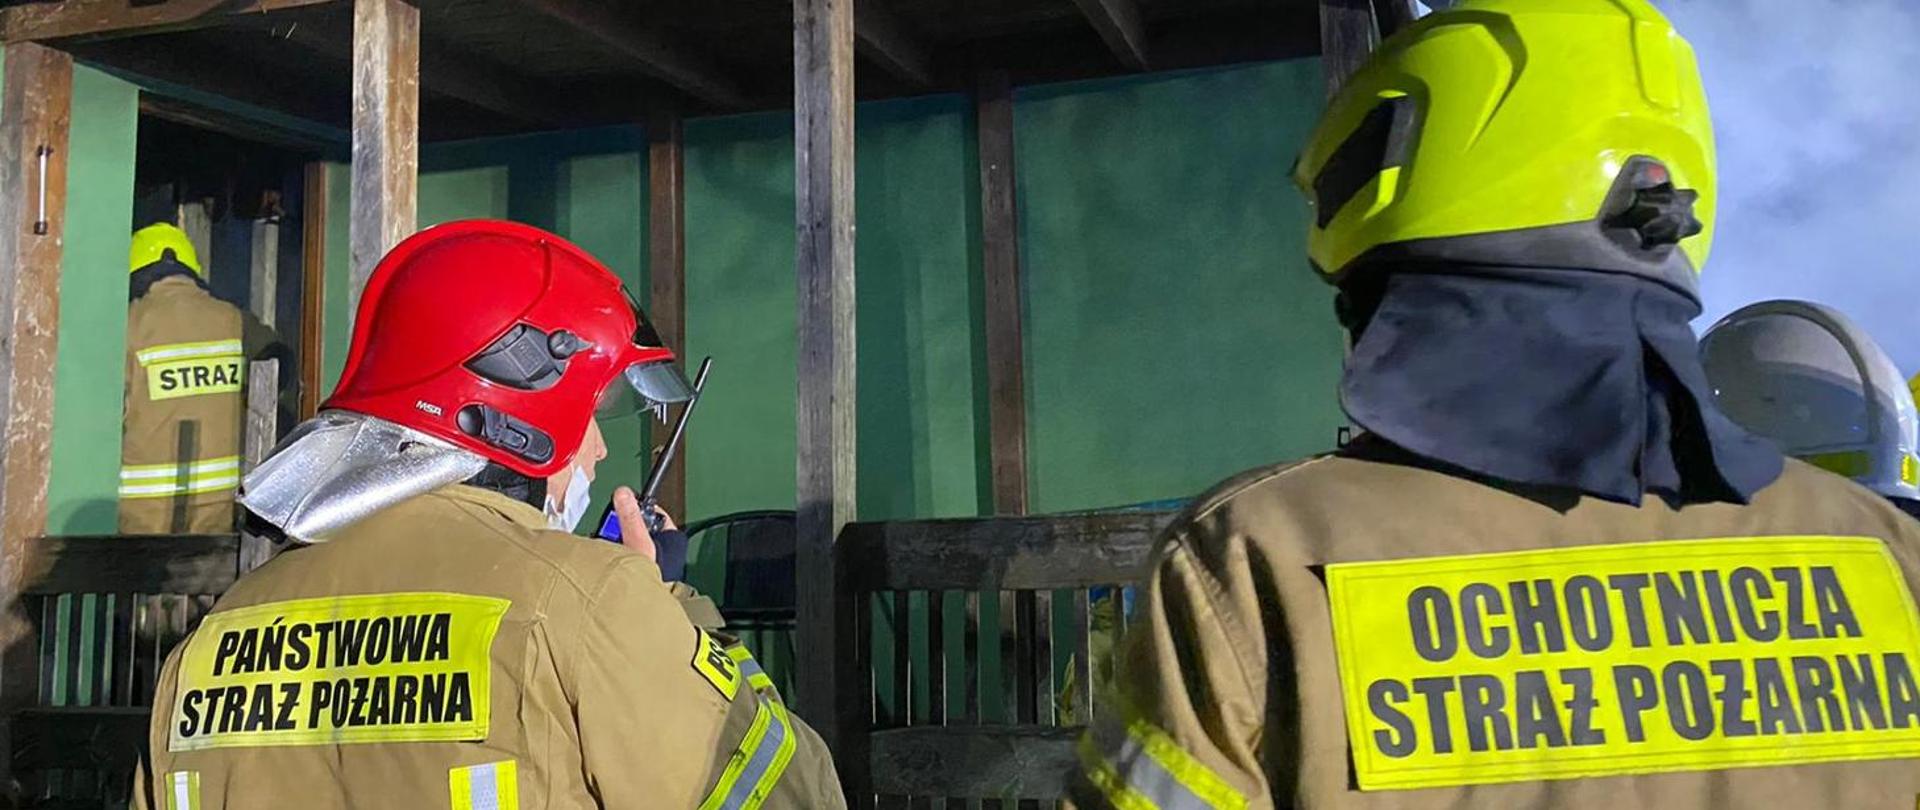 Zdjęcie przedstawia dwóch strażaków na tle budynku, ubranych w ubrania specjalne i hełmy.